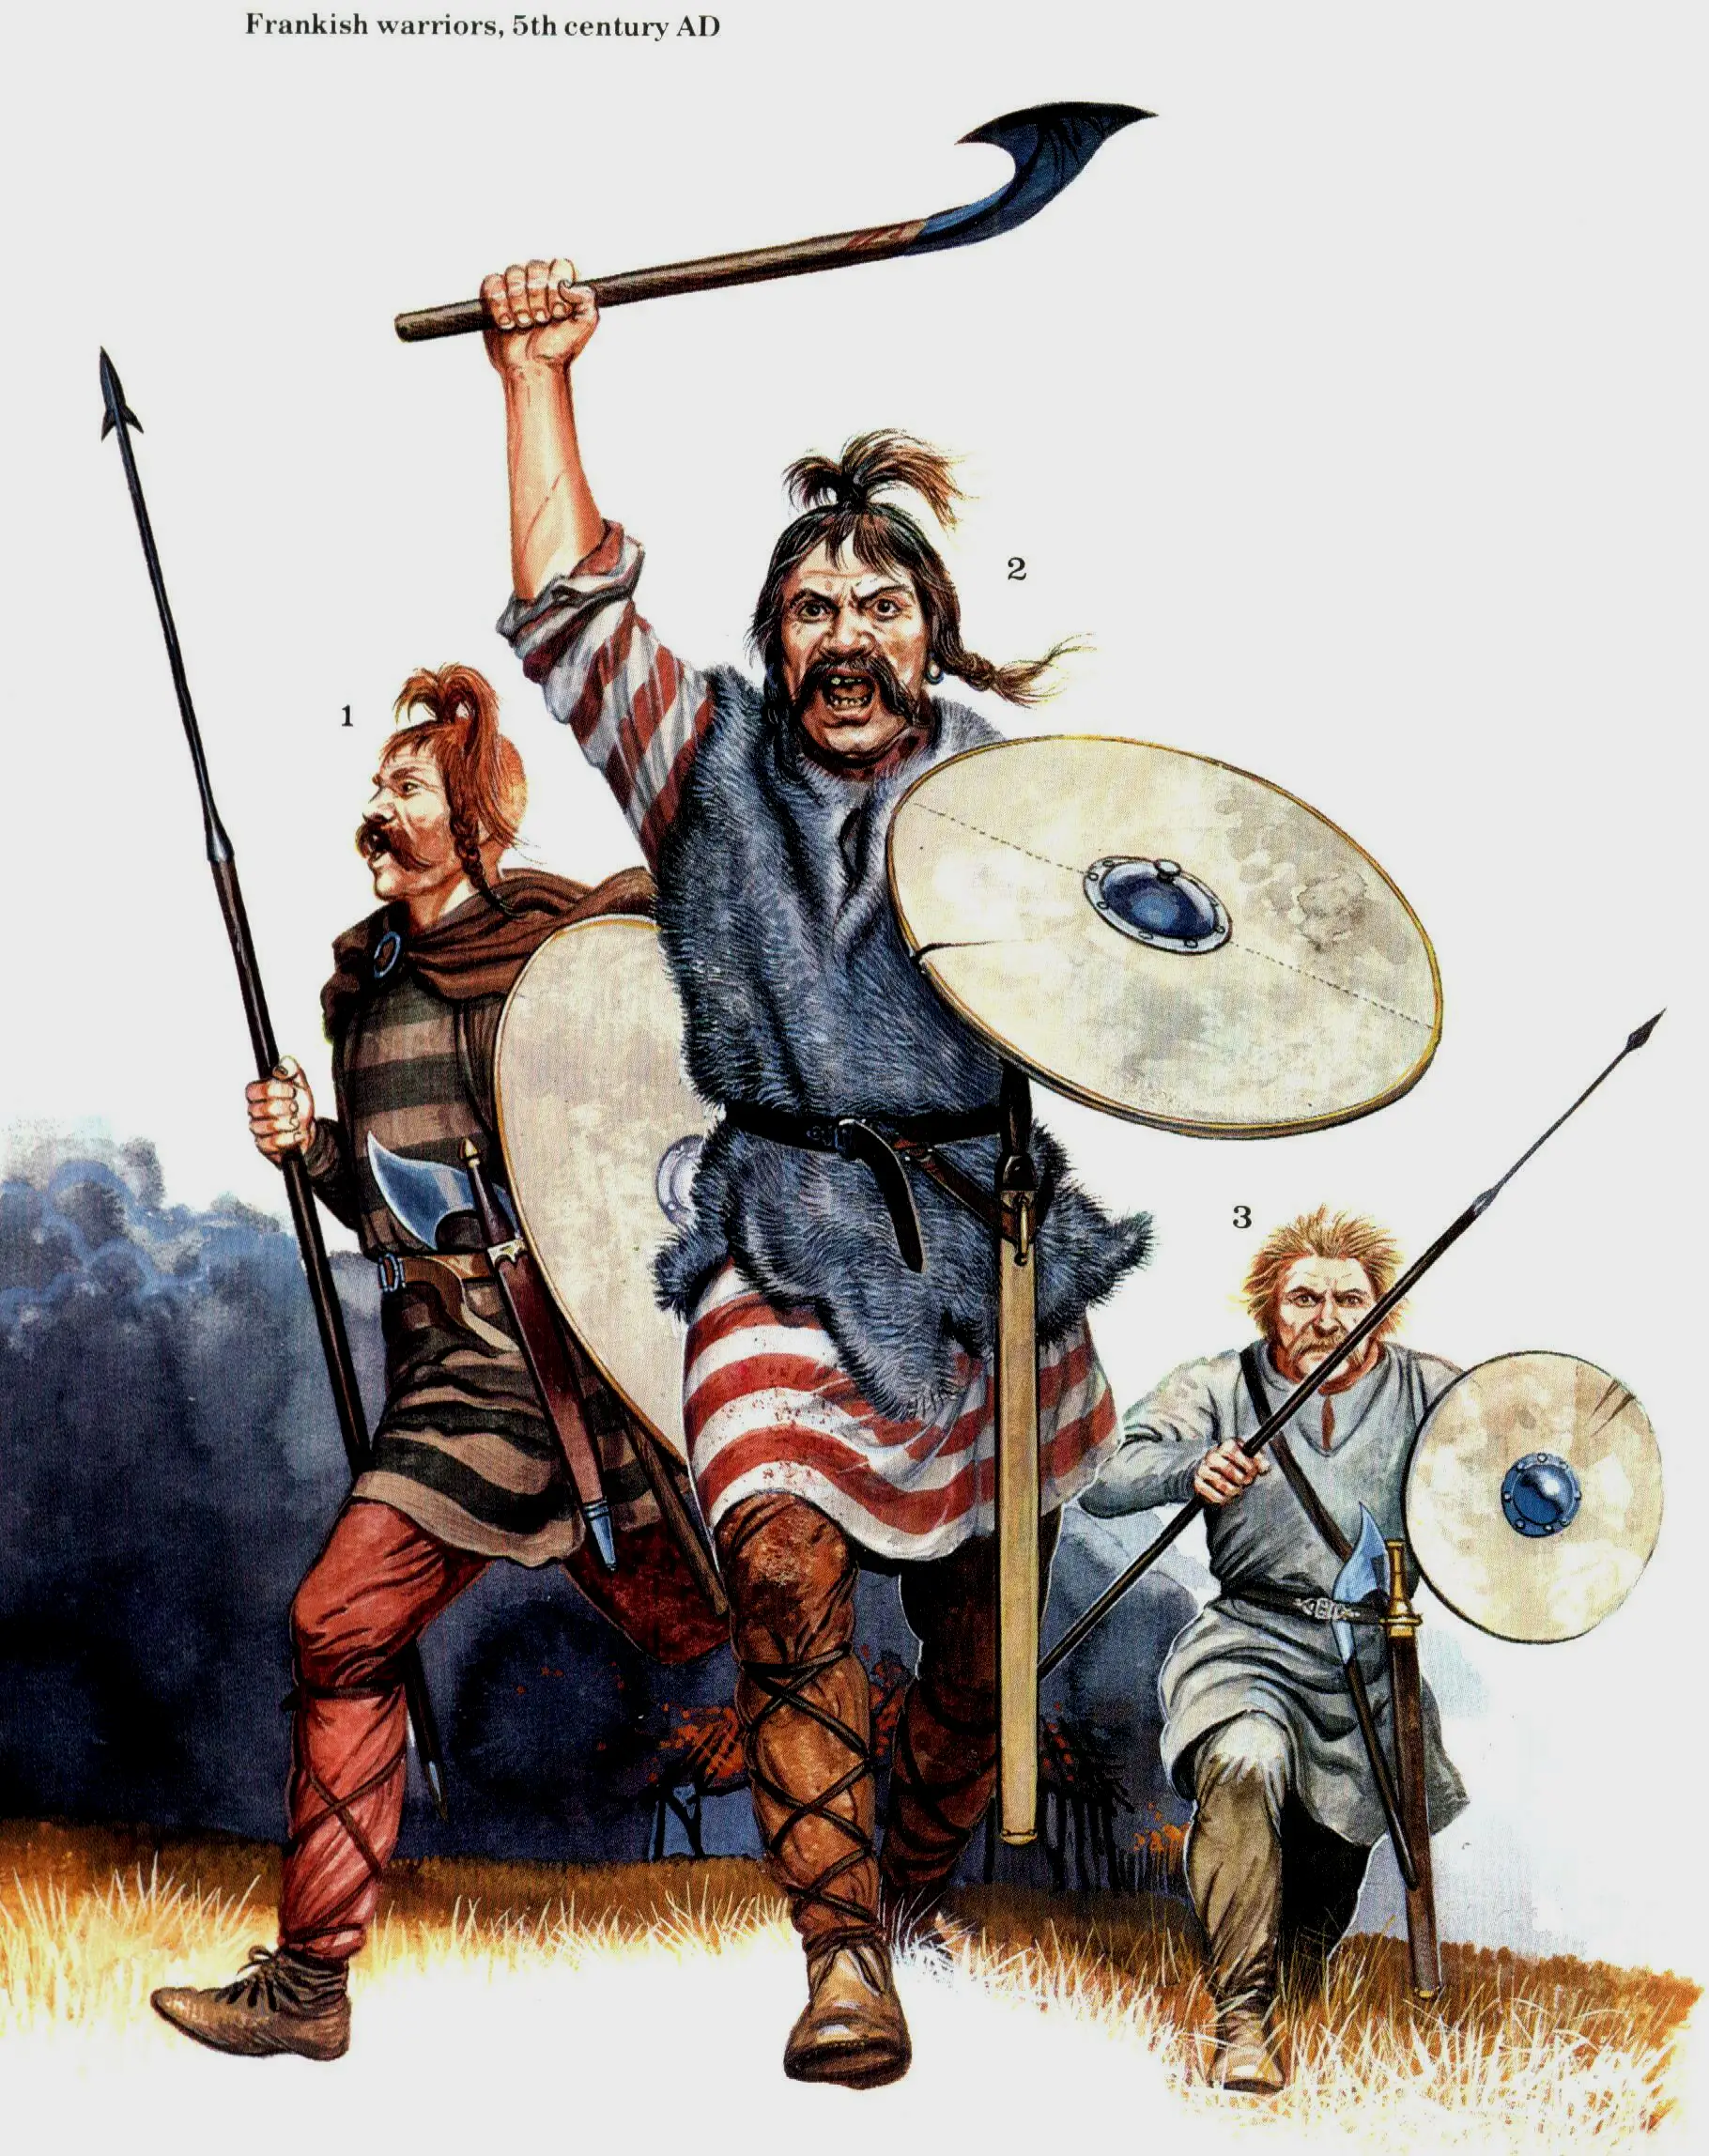 克洛维征服高卢战争时期的法兰克人，同时代不同作者对法兰克人的记录几乎完全相似，都提到法兰克人不穿盔甲，腰间系着腰带，腿部有皮甲或者布甲防御，以盾牌防身，使用飞斧和标枪战斗。法兰克人的标枪和罗马标枪（Pilum）类似，，有较长的铁枪头，卡在盾牌上时很难斩断